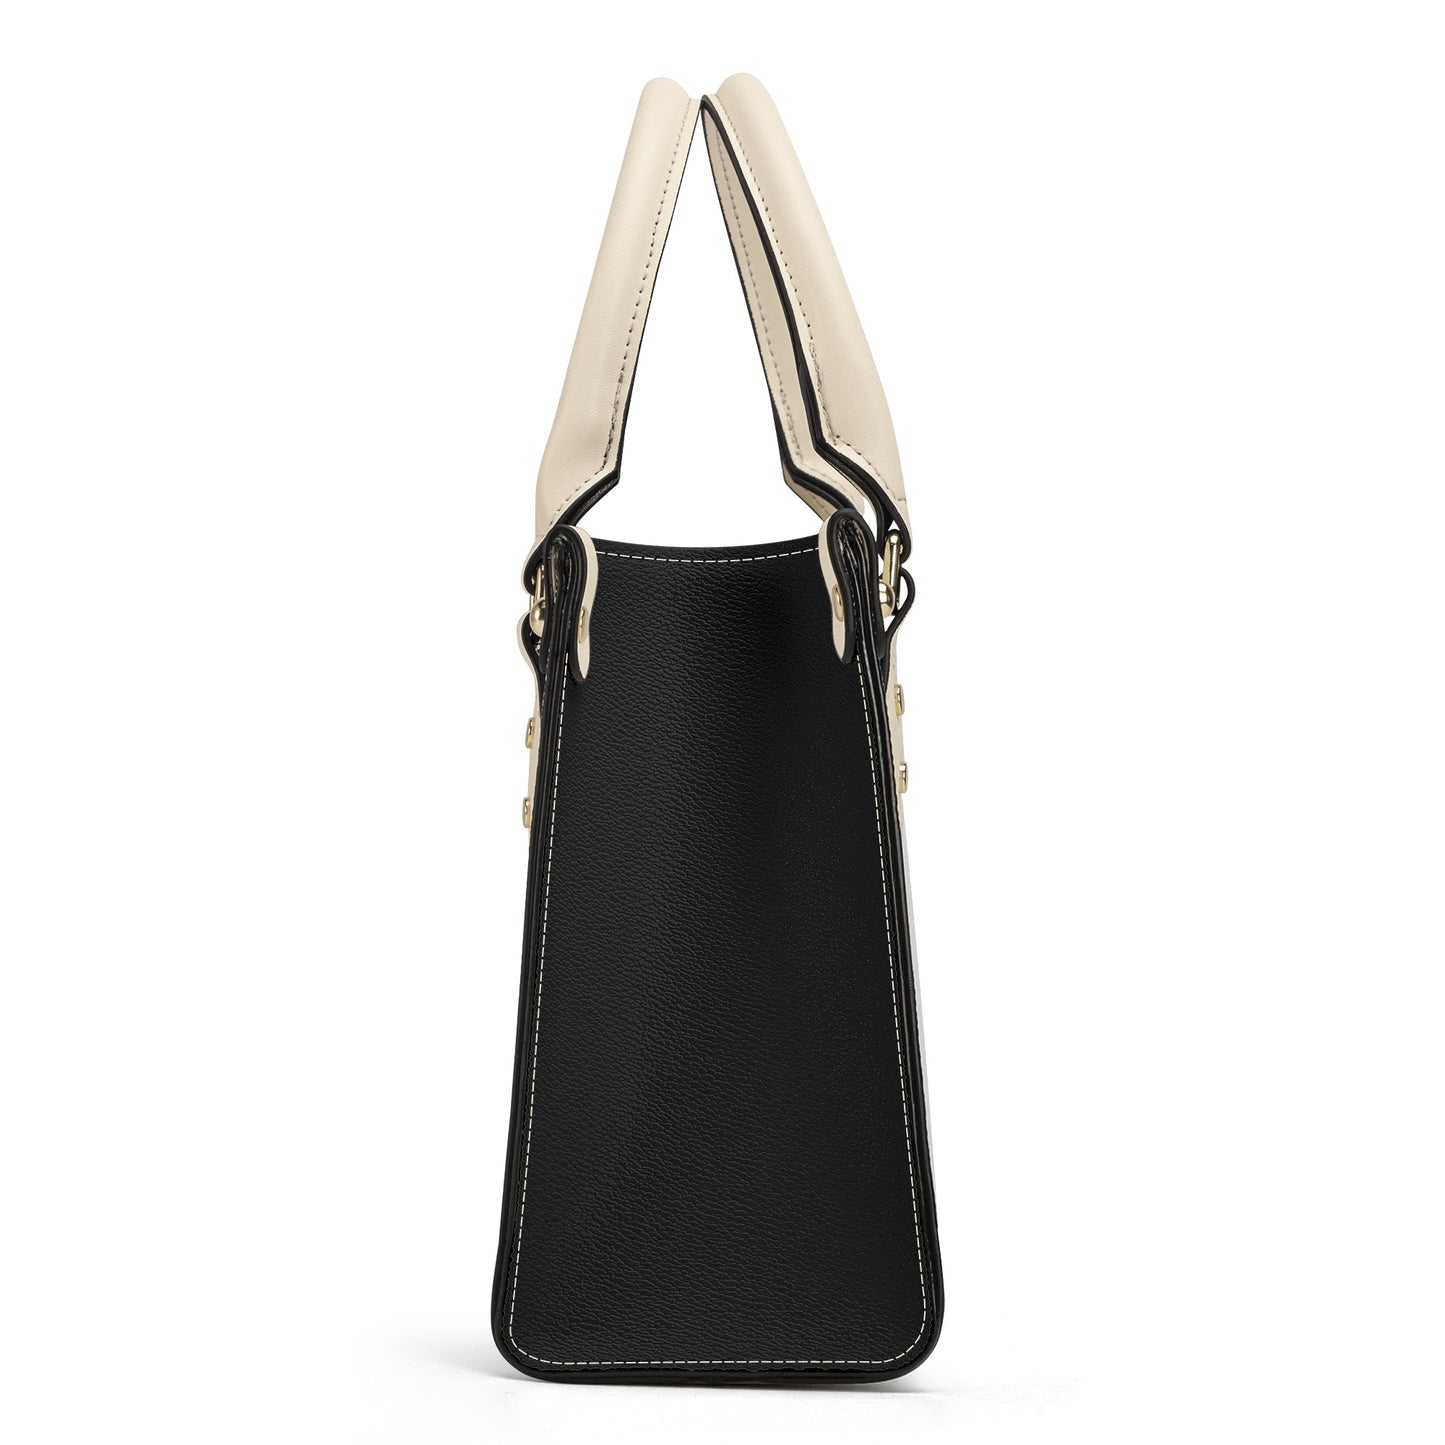 Joey - Luxury Women Handbag